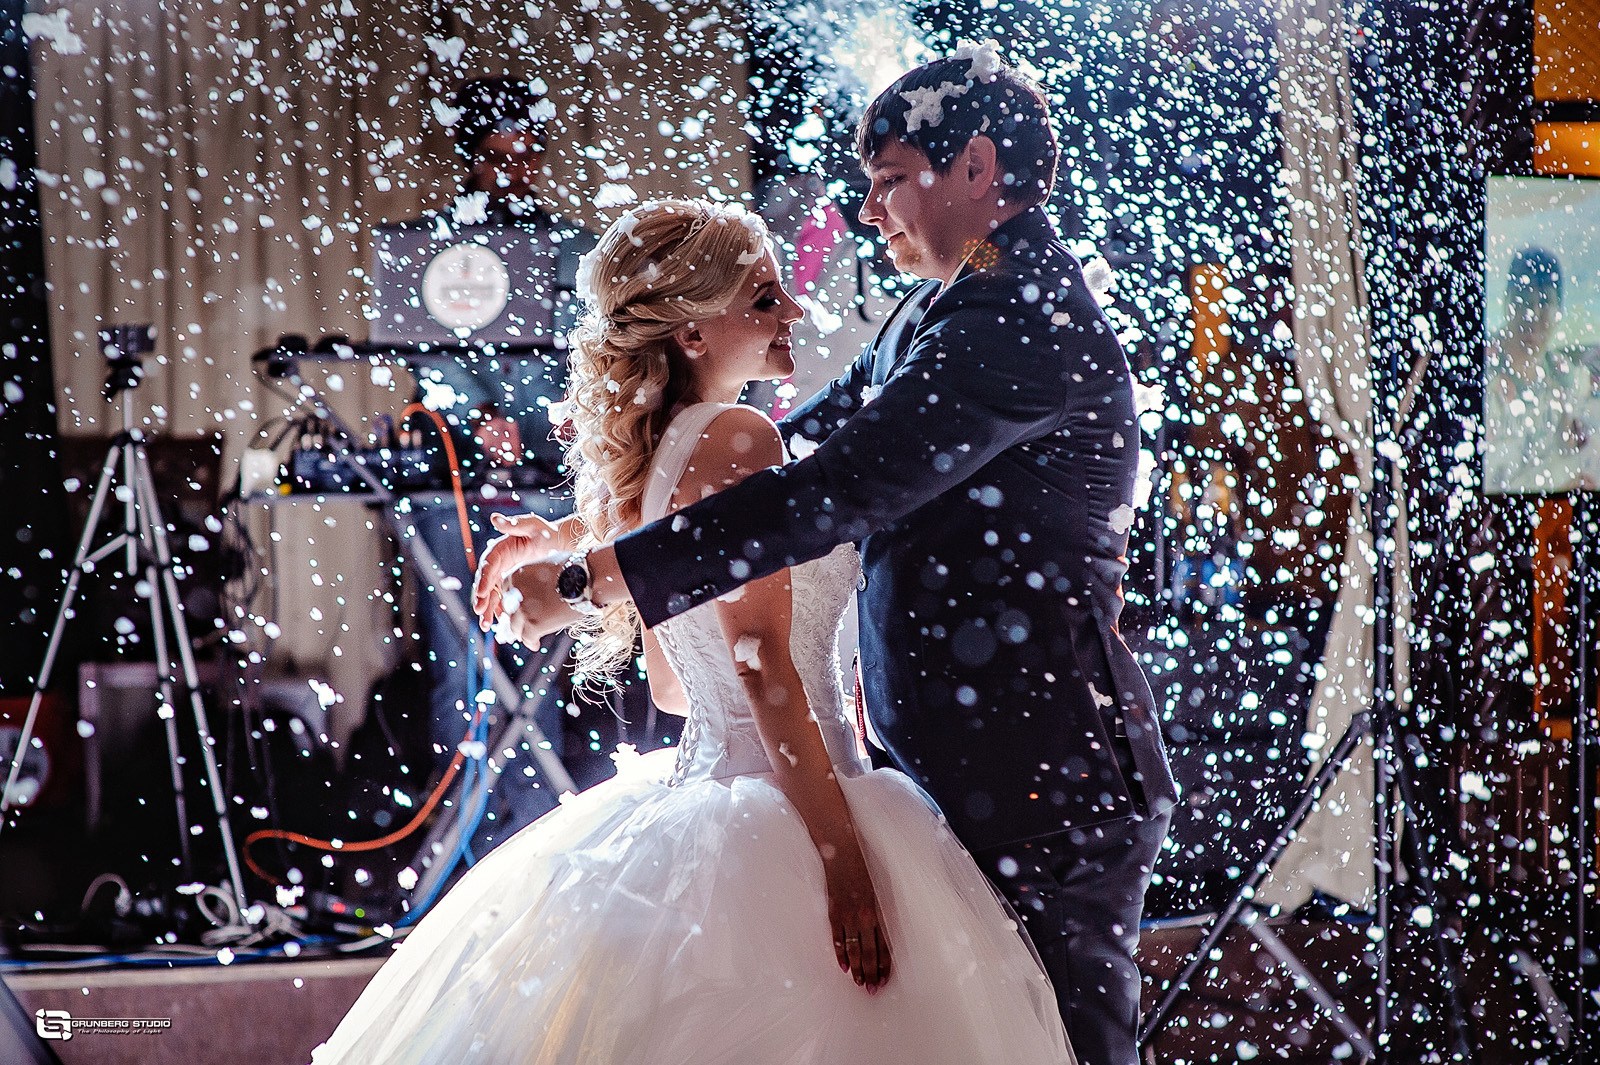 Танец снежки. Искусственный снег на свадьбу. Генератор снега на свадьбу. Искусственный снег для свадебного танца. Первый танец.